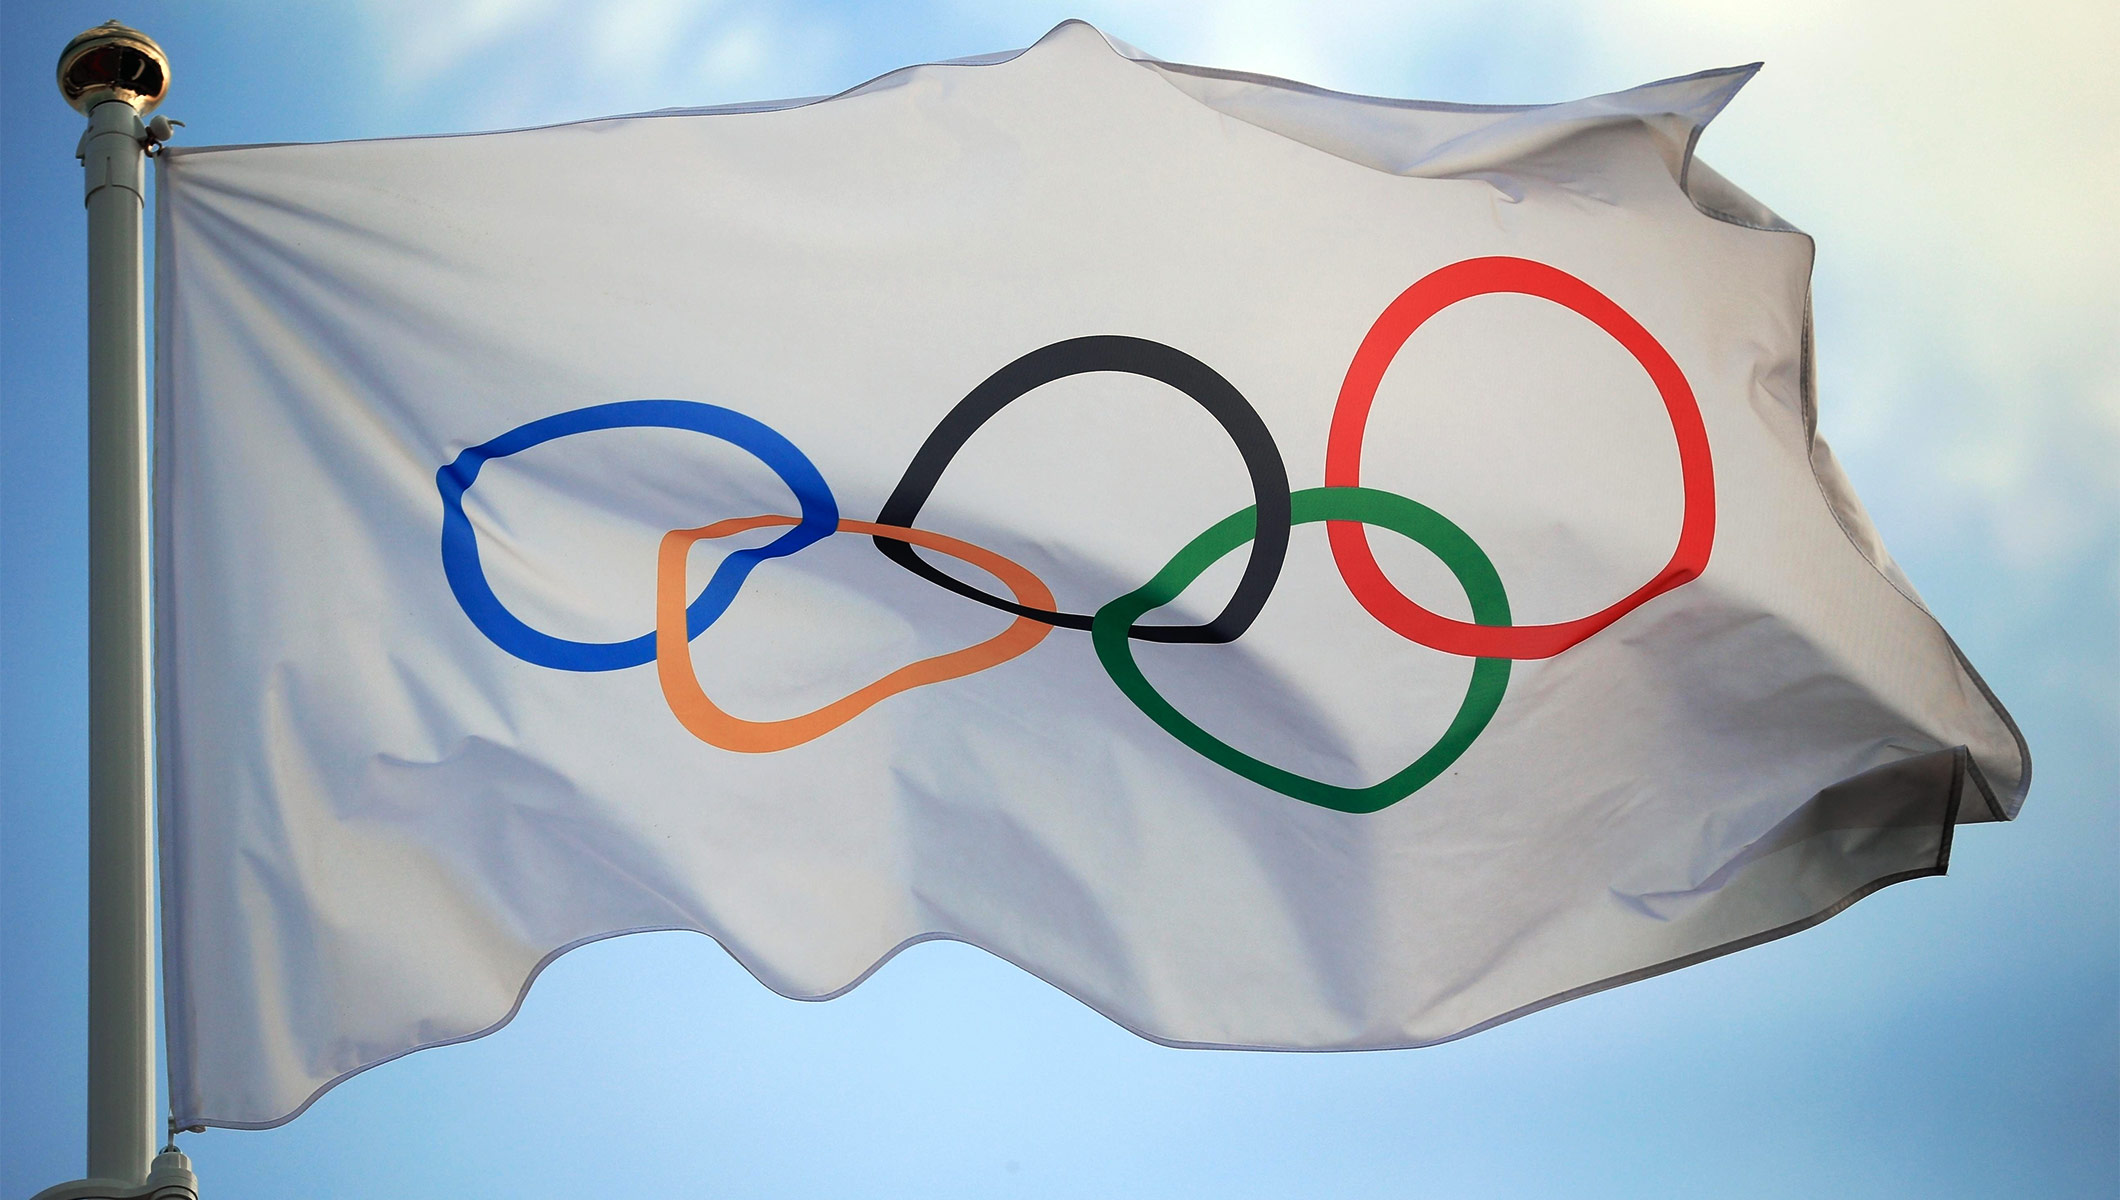 Giochi Olimpici 2026, approvata la candidatura di Milano-Cortina. Assegnazione a giugno 2019 a Losanna